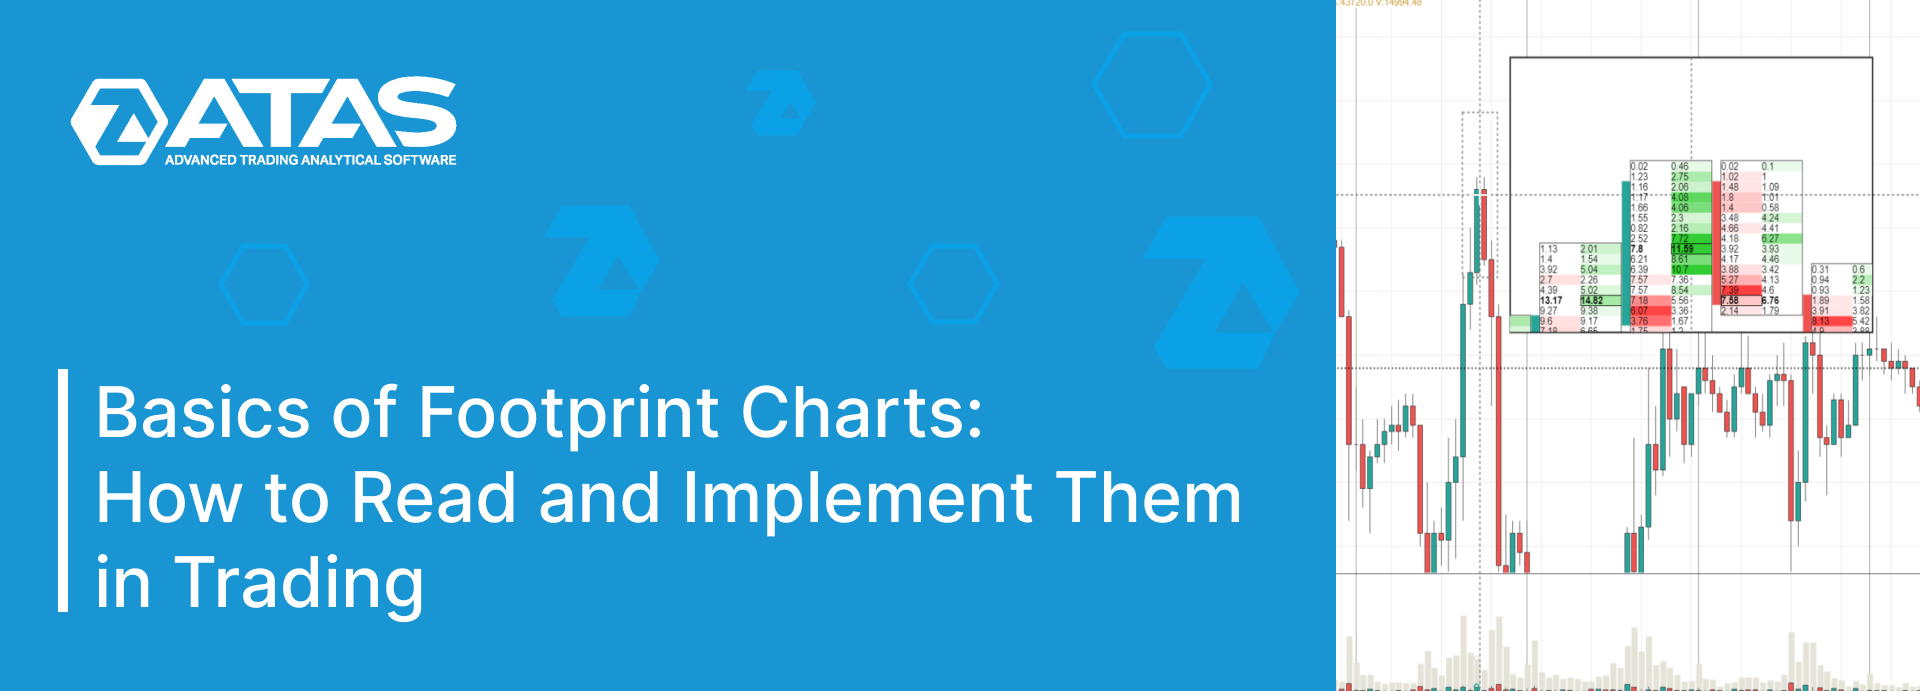 Basics of Footprint Charts